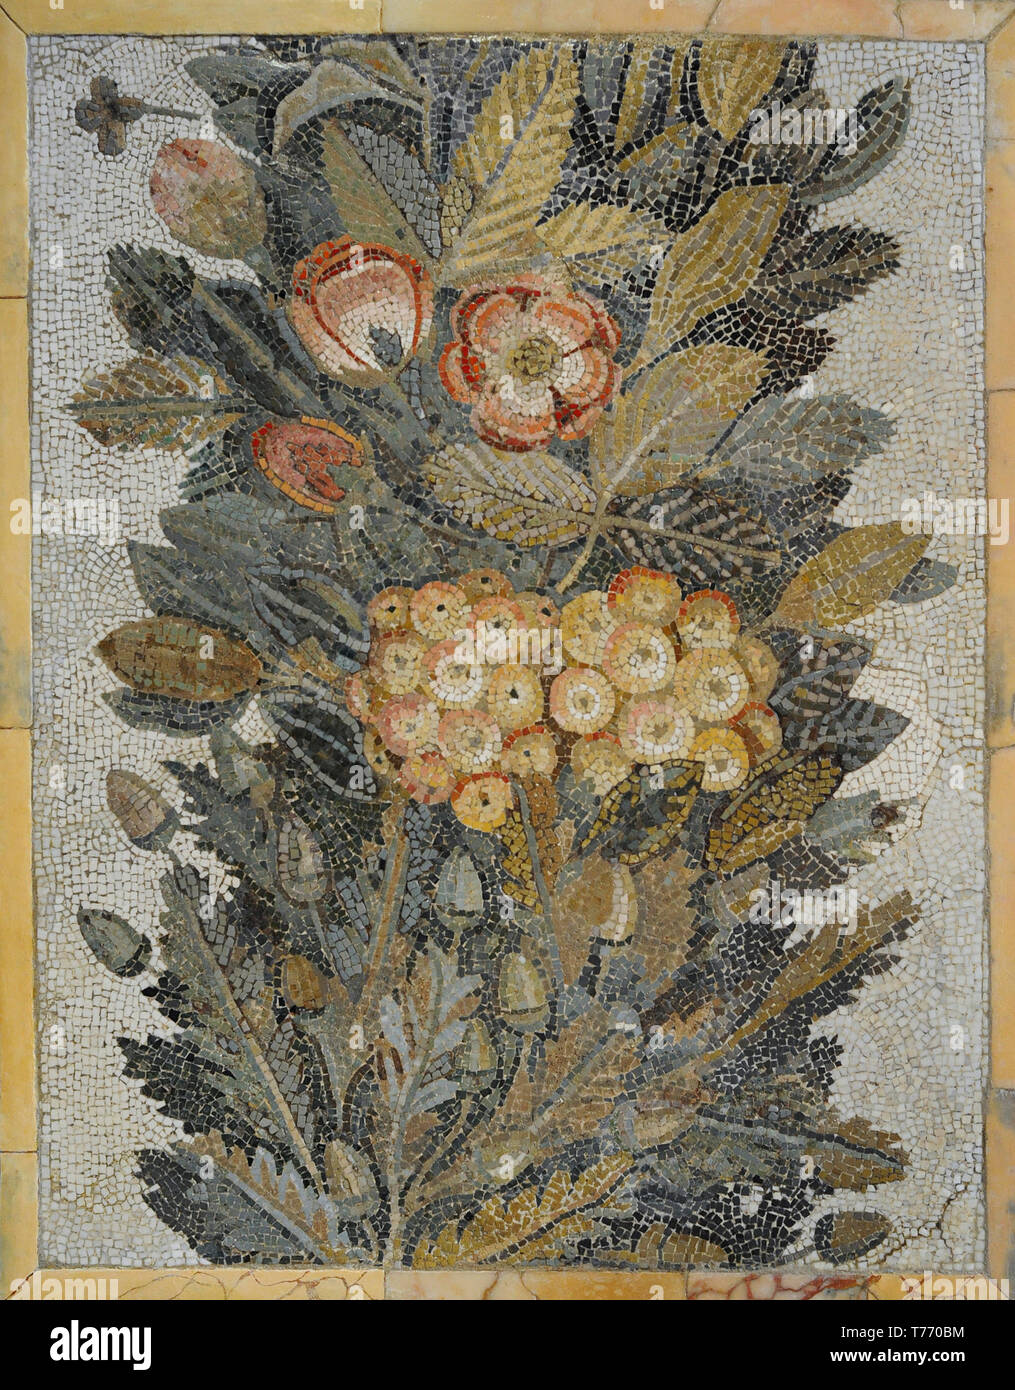 Römische floral Mosaik. 1. Kalkstein und Glaskörper einfügen. Aus Italien. Nationalen Archäologischen Museum. Madrid. Spanien. Stockfoto